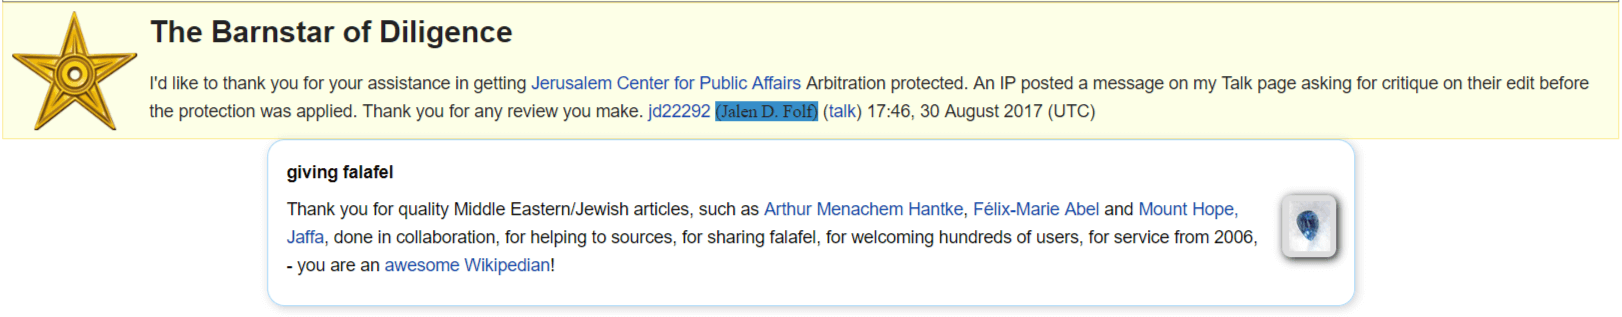 Shrike Israel Wikipedia MintPress News